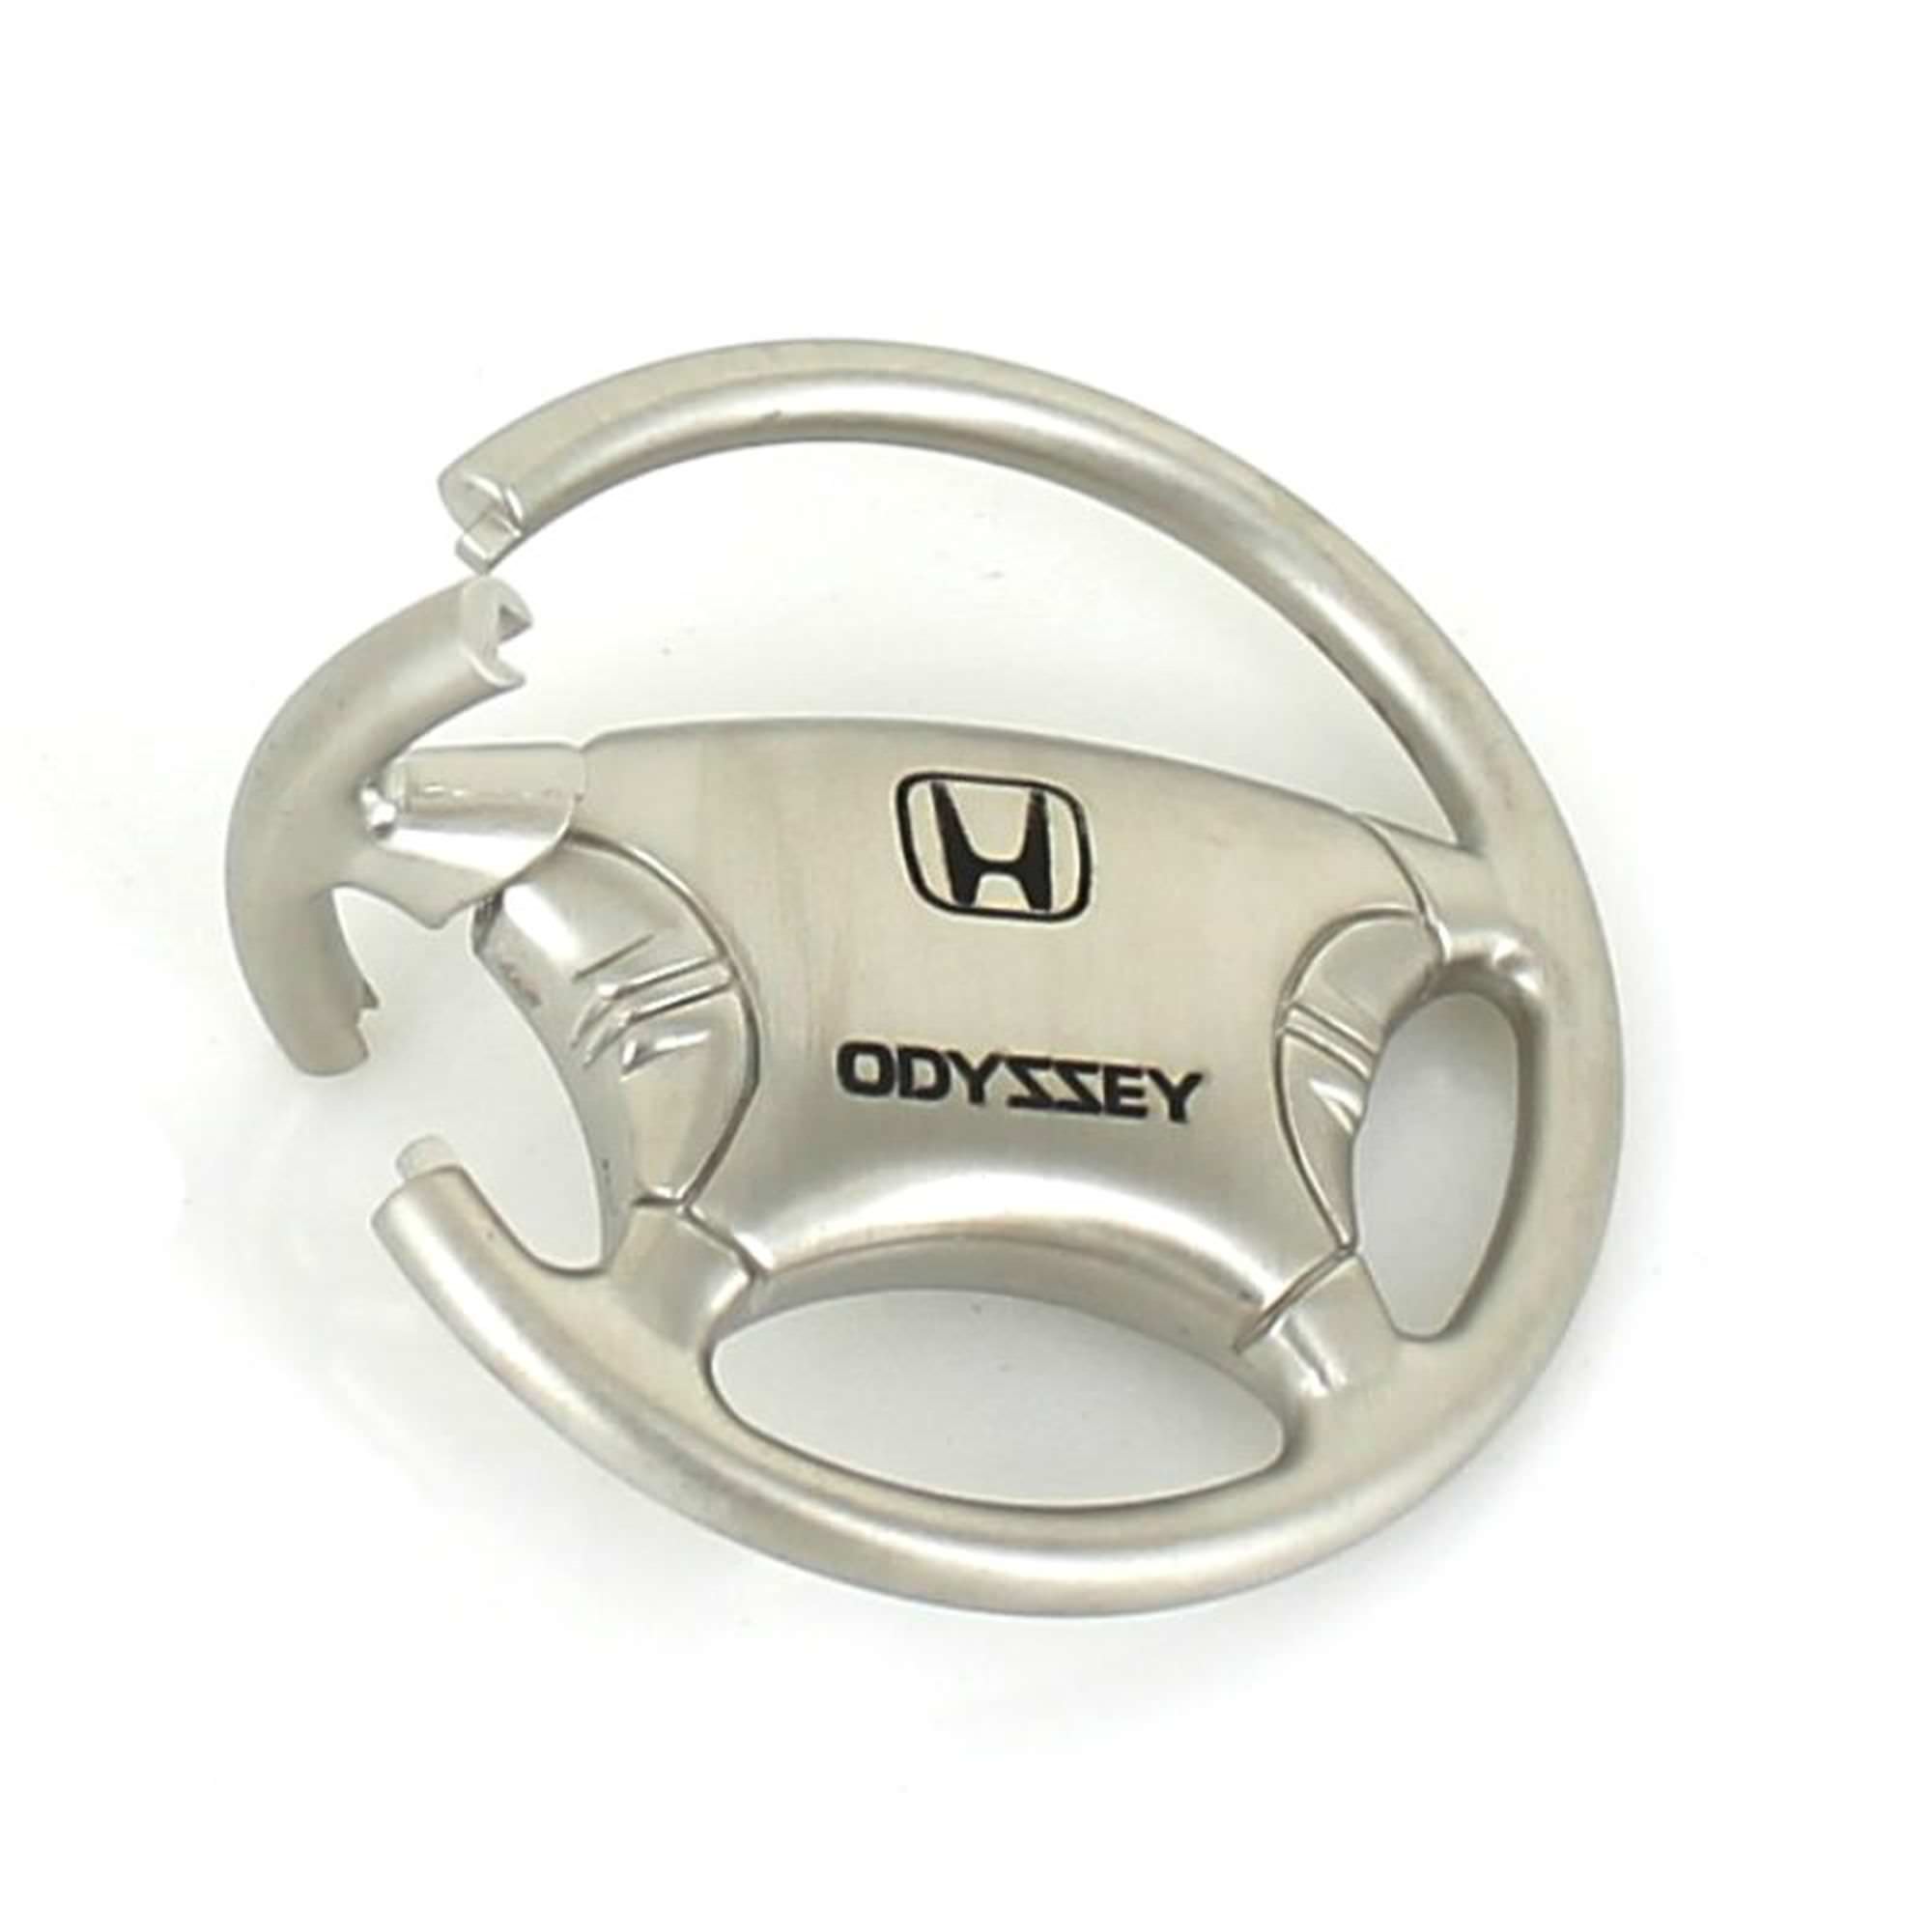 Honda Odyssey Steering Wheel Keychain (Chrome) | eBay